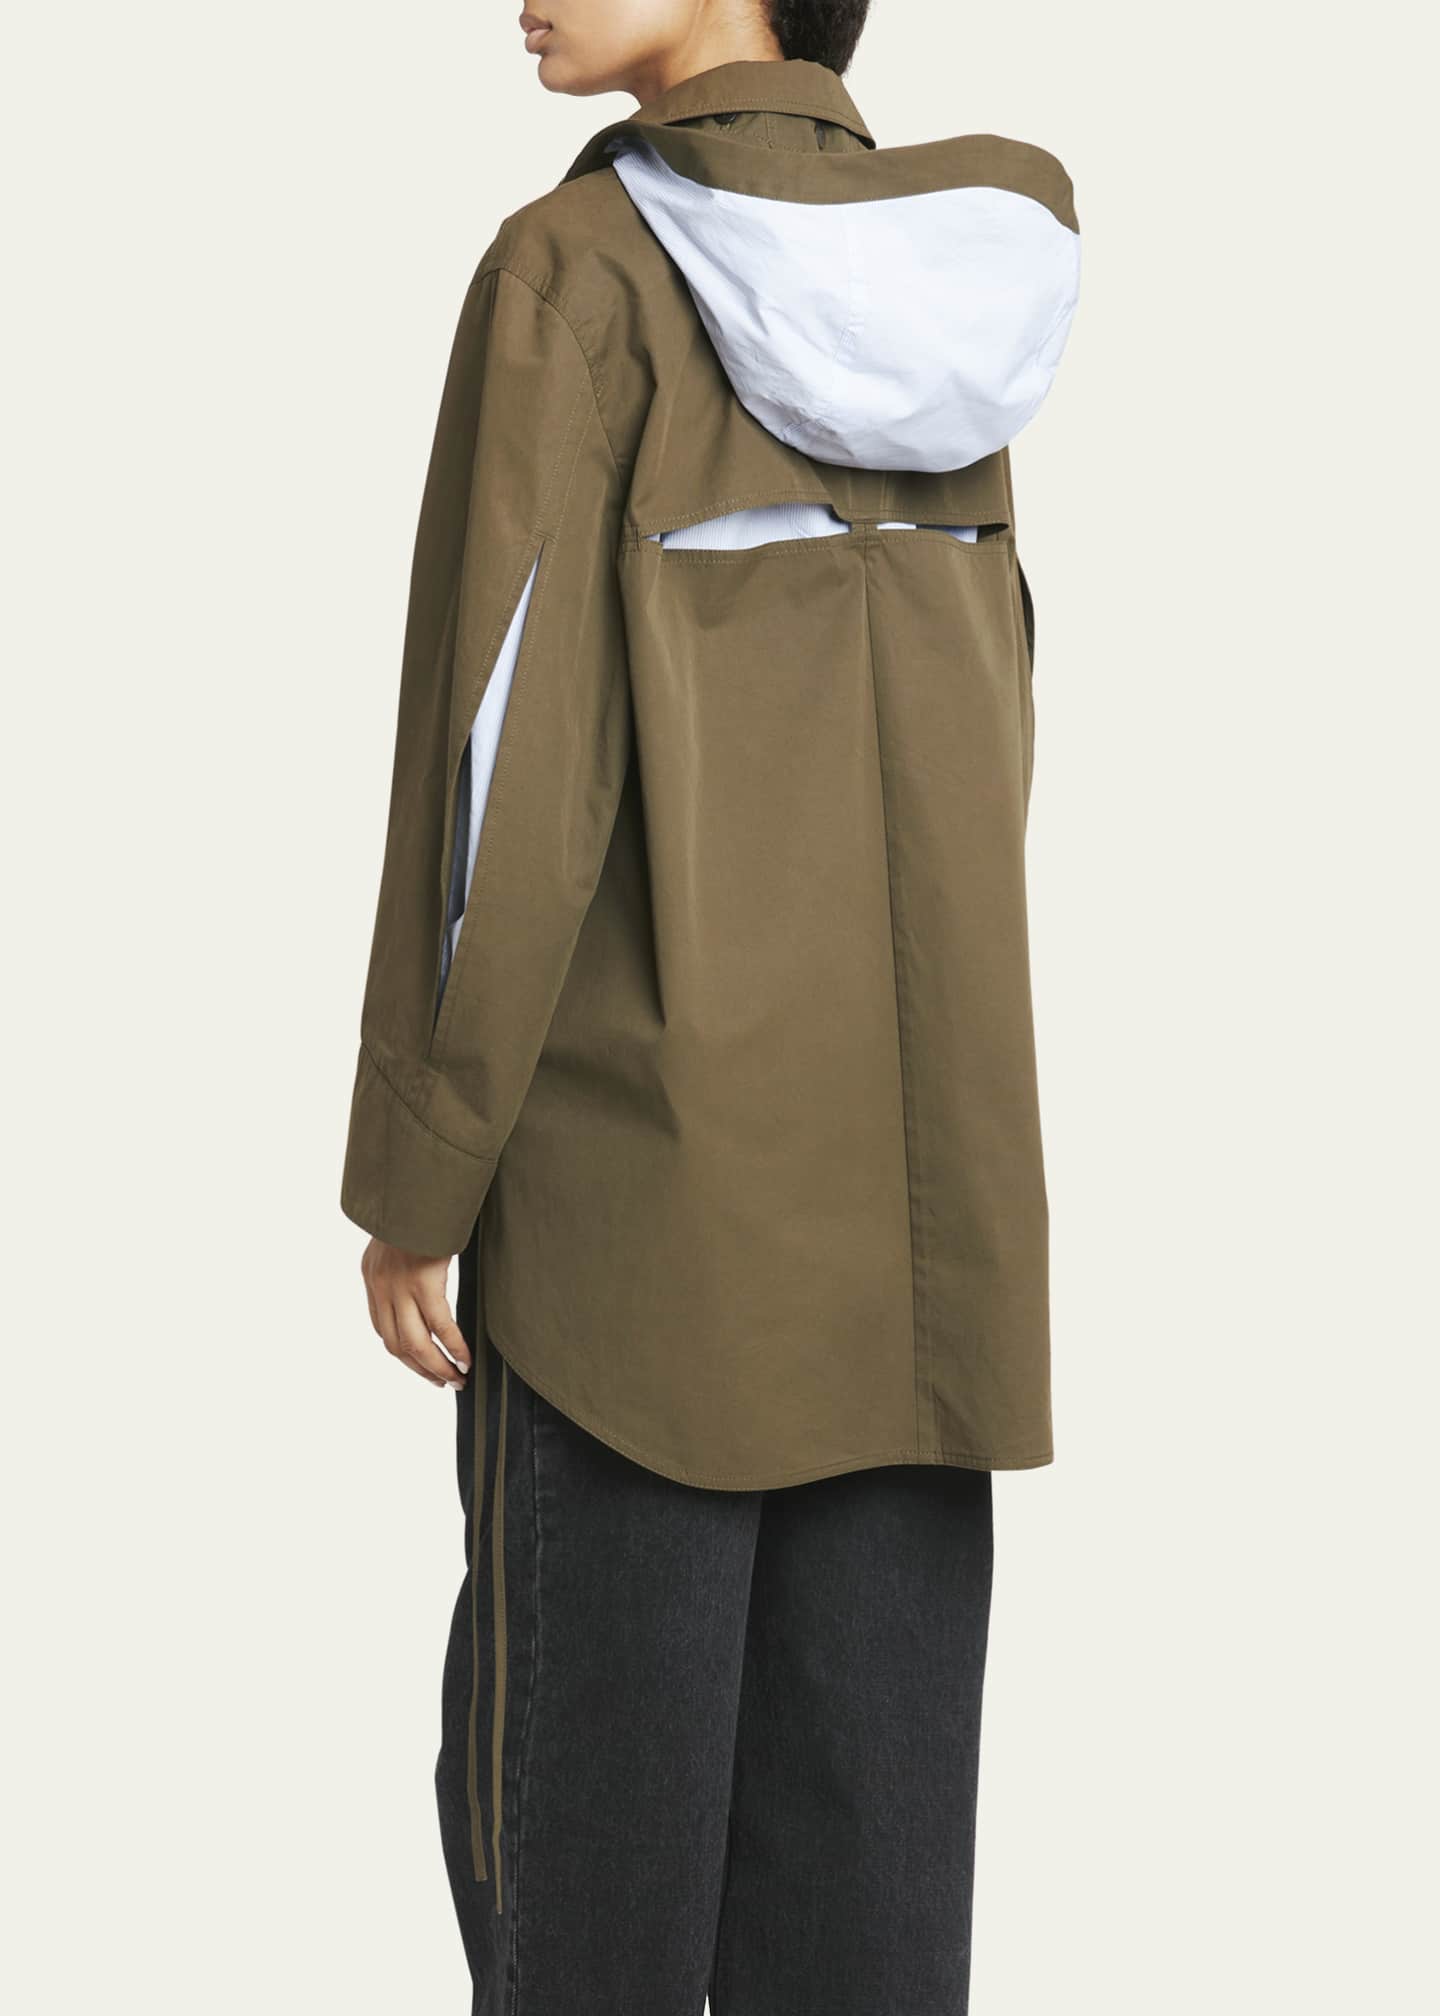 Loewe Water-Resistant Military Parka Jacket w/ Detachable Hood